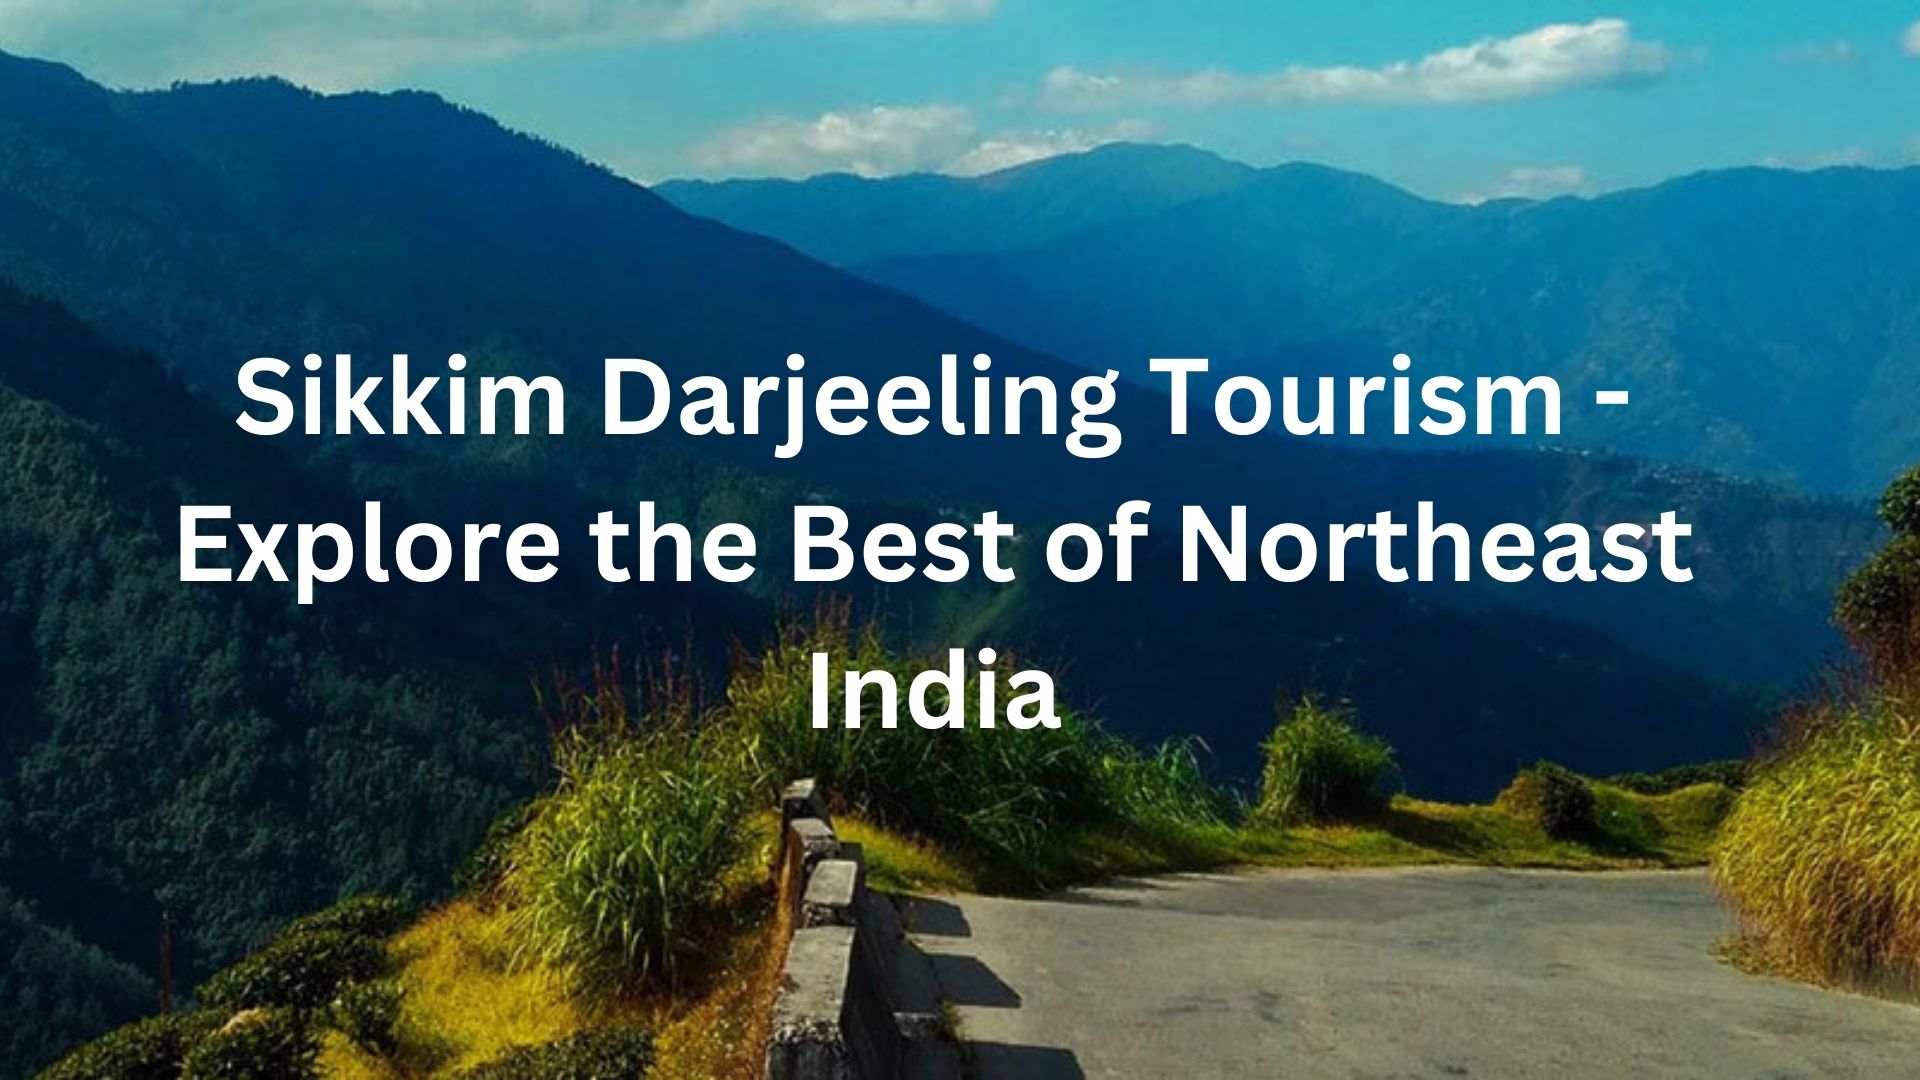 Sikkim Darjeeling Tourism - Explore the Best of Northeast India